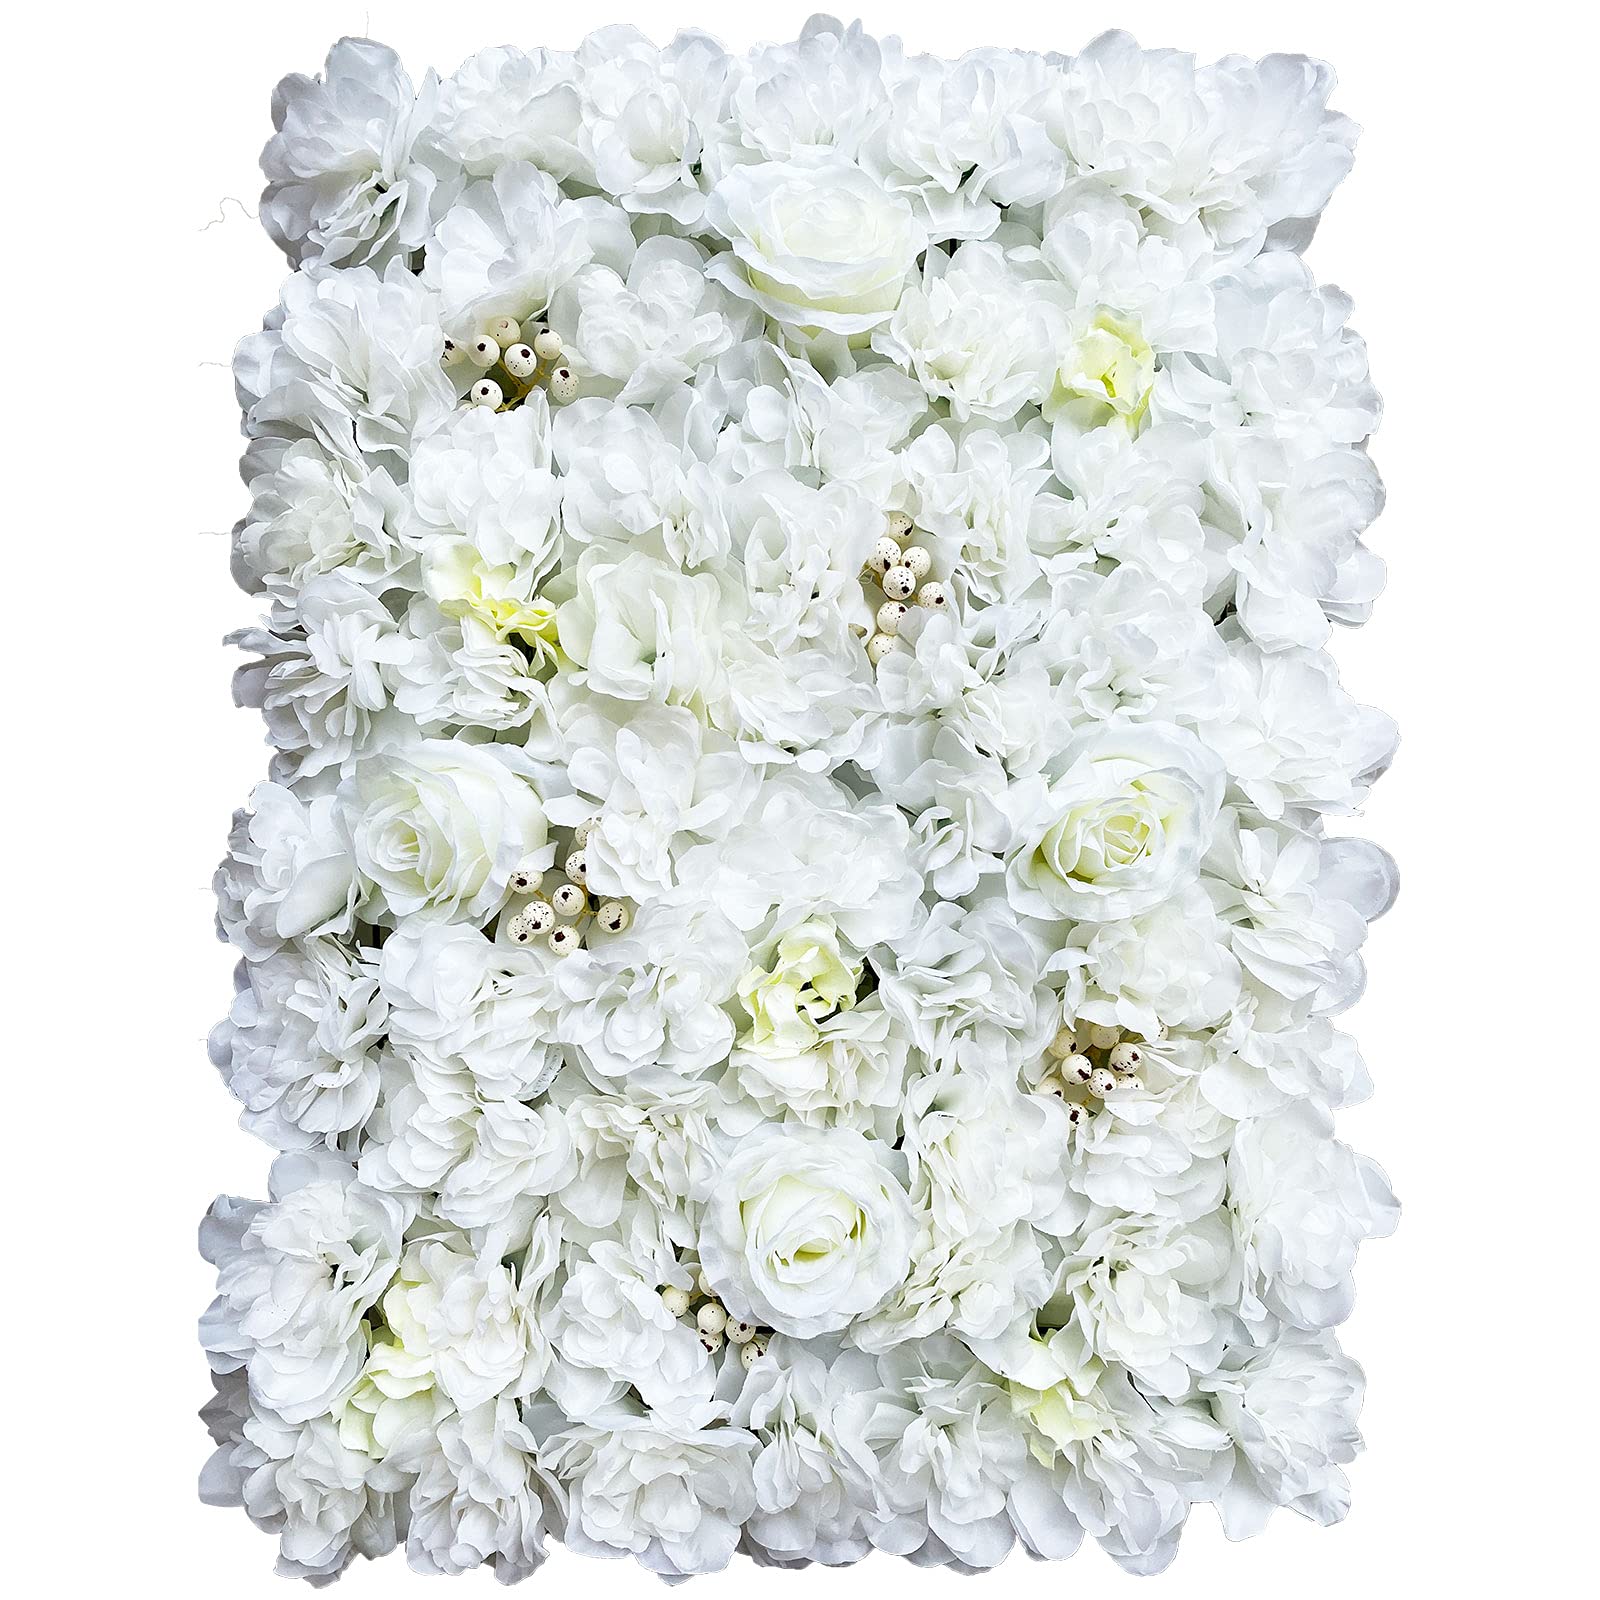  12 pannelli da parete romantici con fiori artificiali, 60 x 40 cm